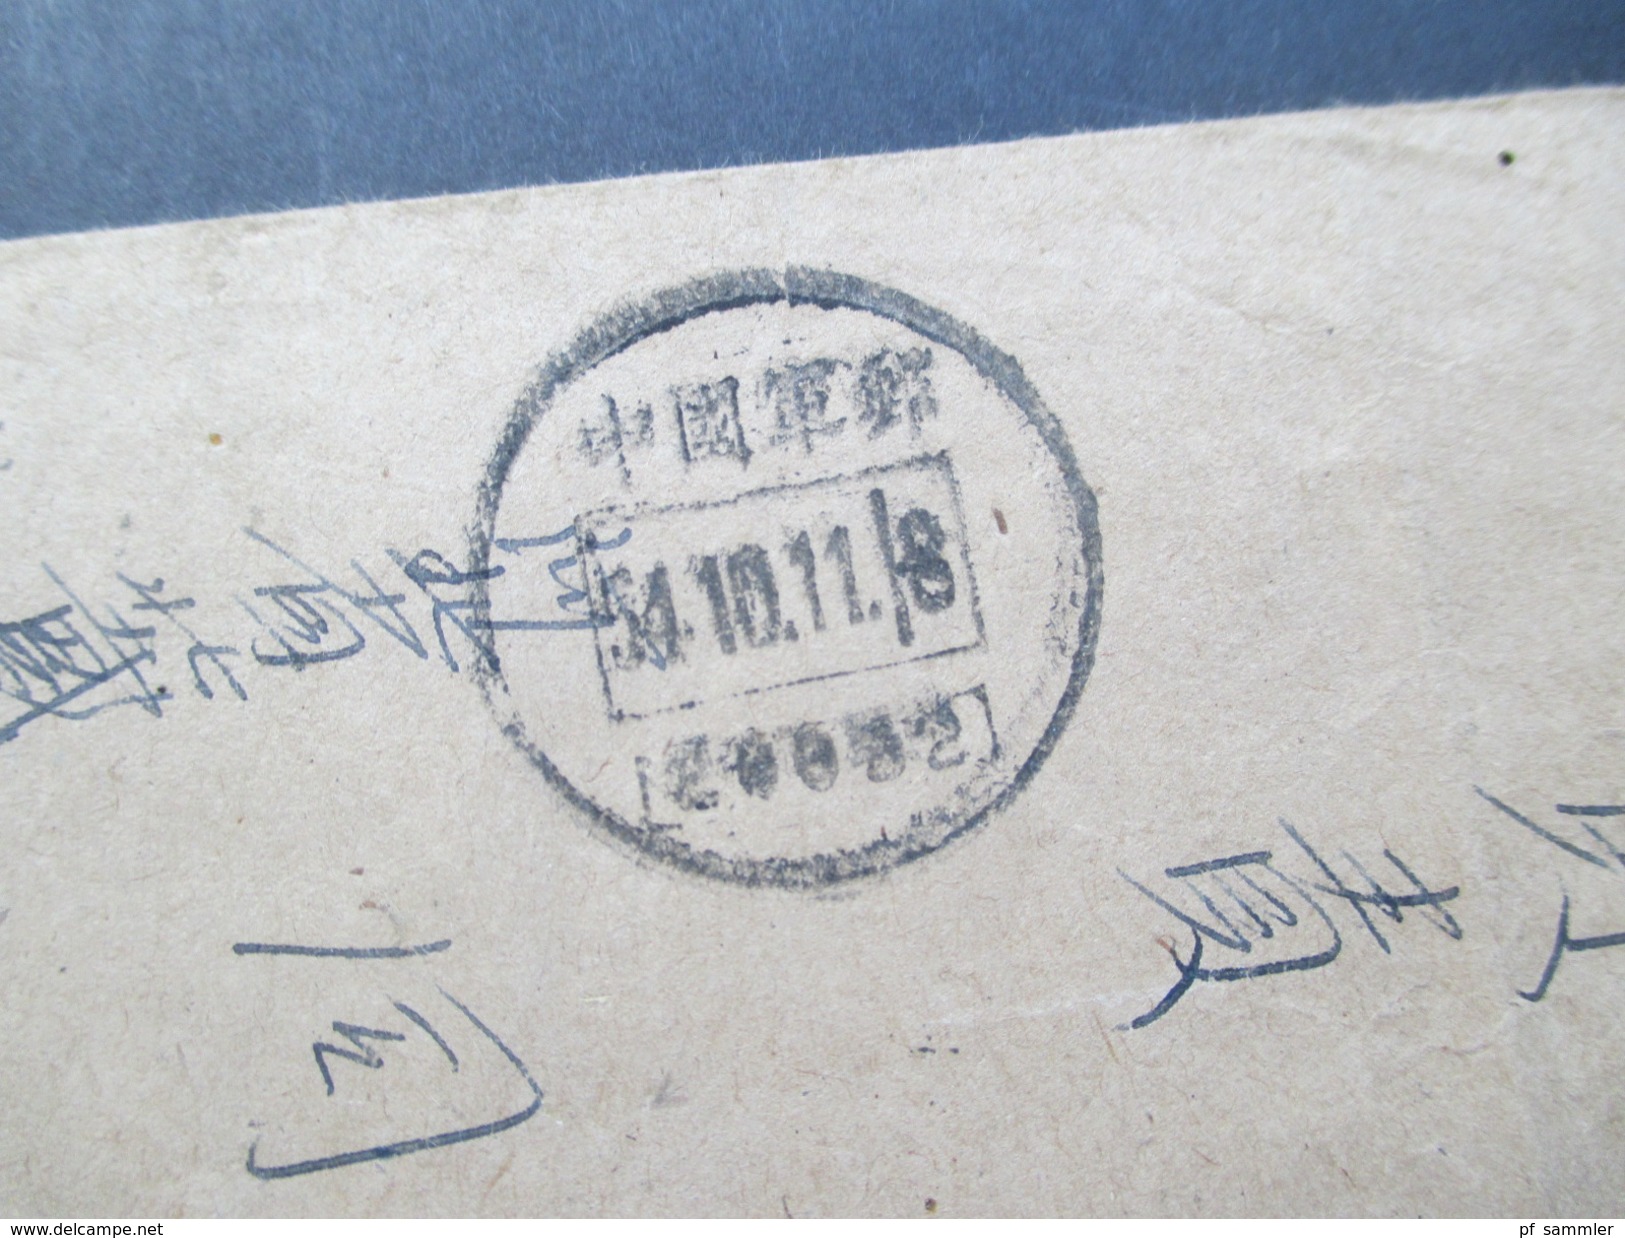 Volksrepublik China 1950er Jahre Militärpost 21 Belege! Viele Stempel / Zierumschläge. Seltene Stücke! Toller Posten!!